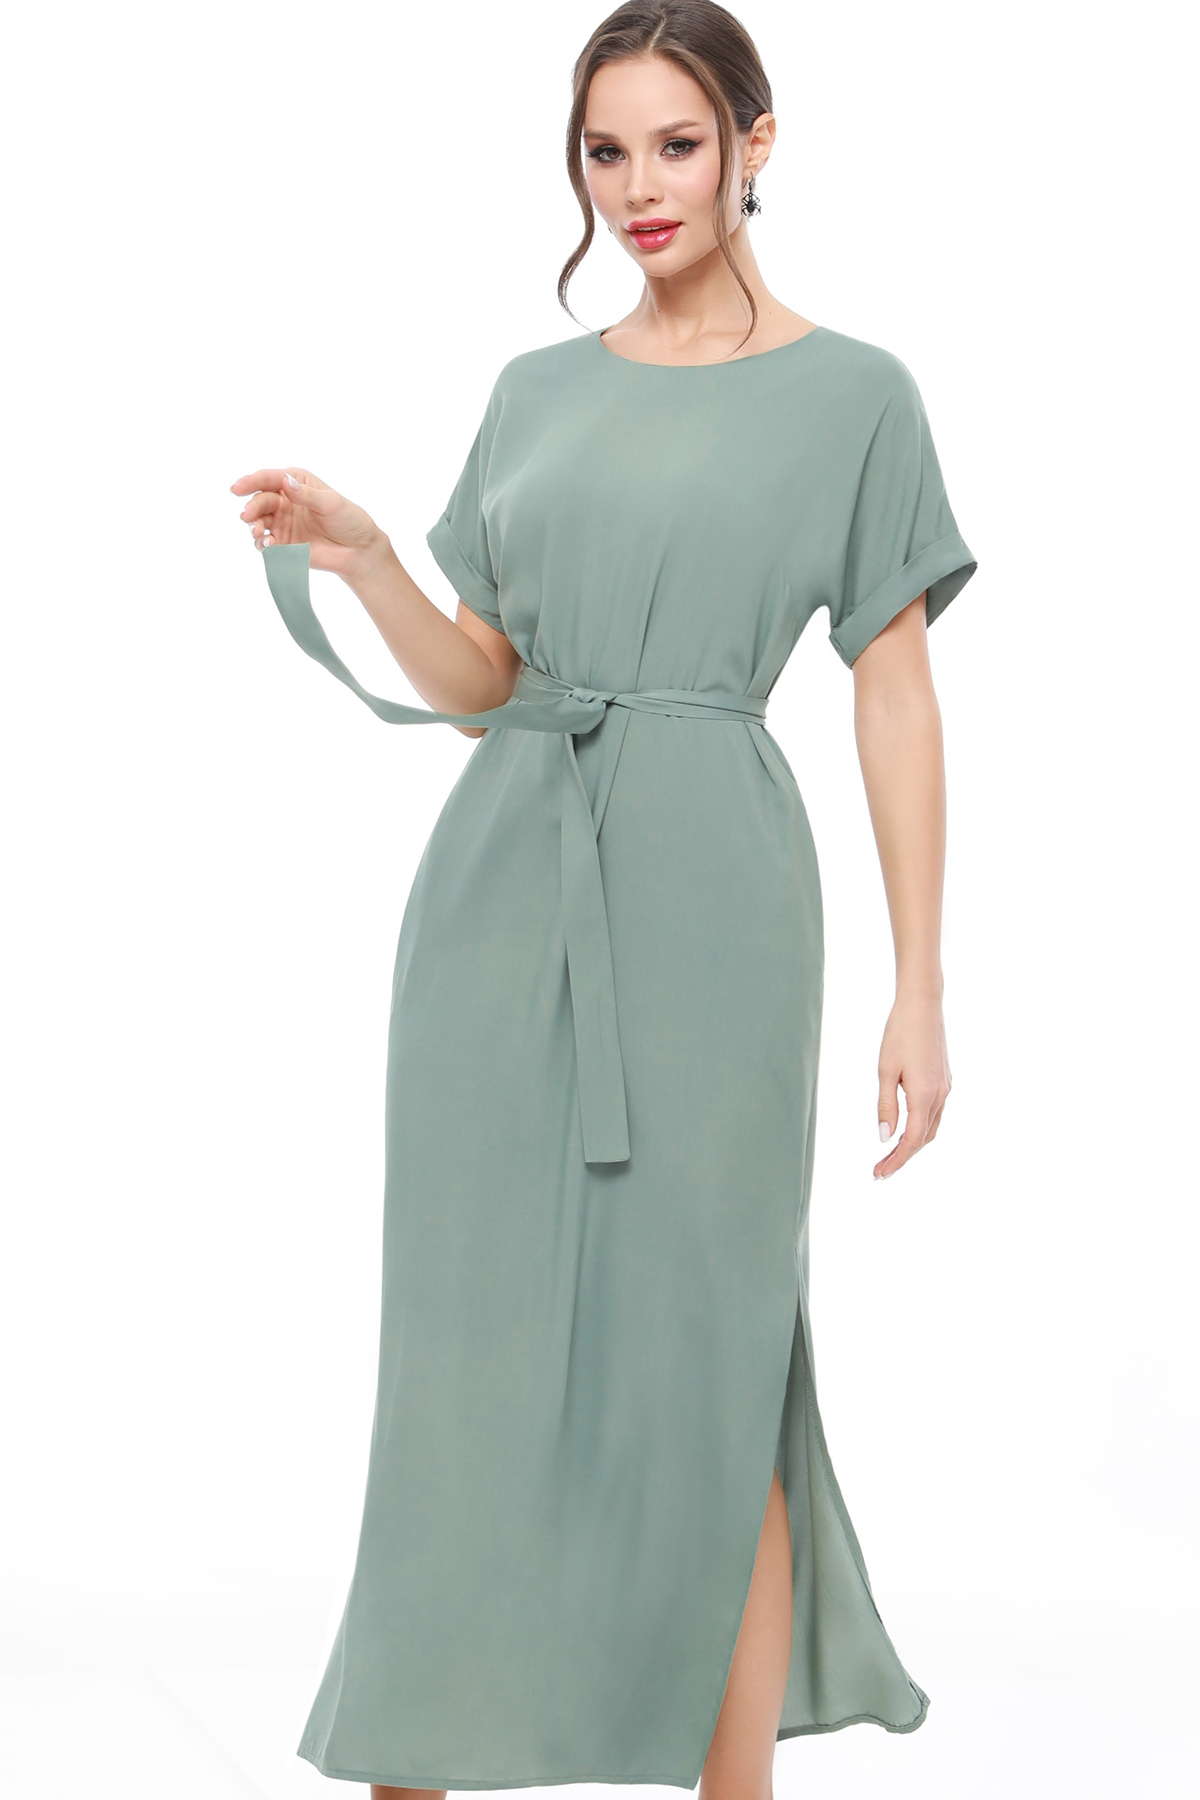 Платье женское DSTrend 0230 зеленое 52 RU